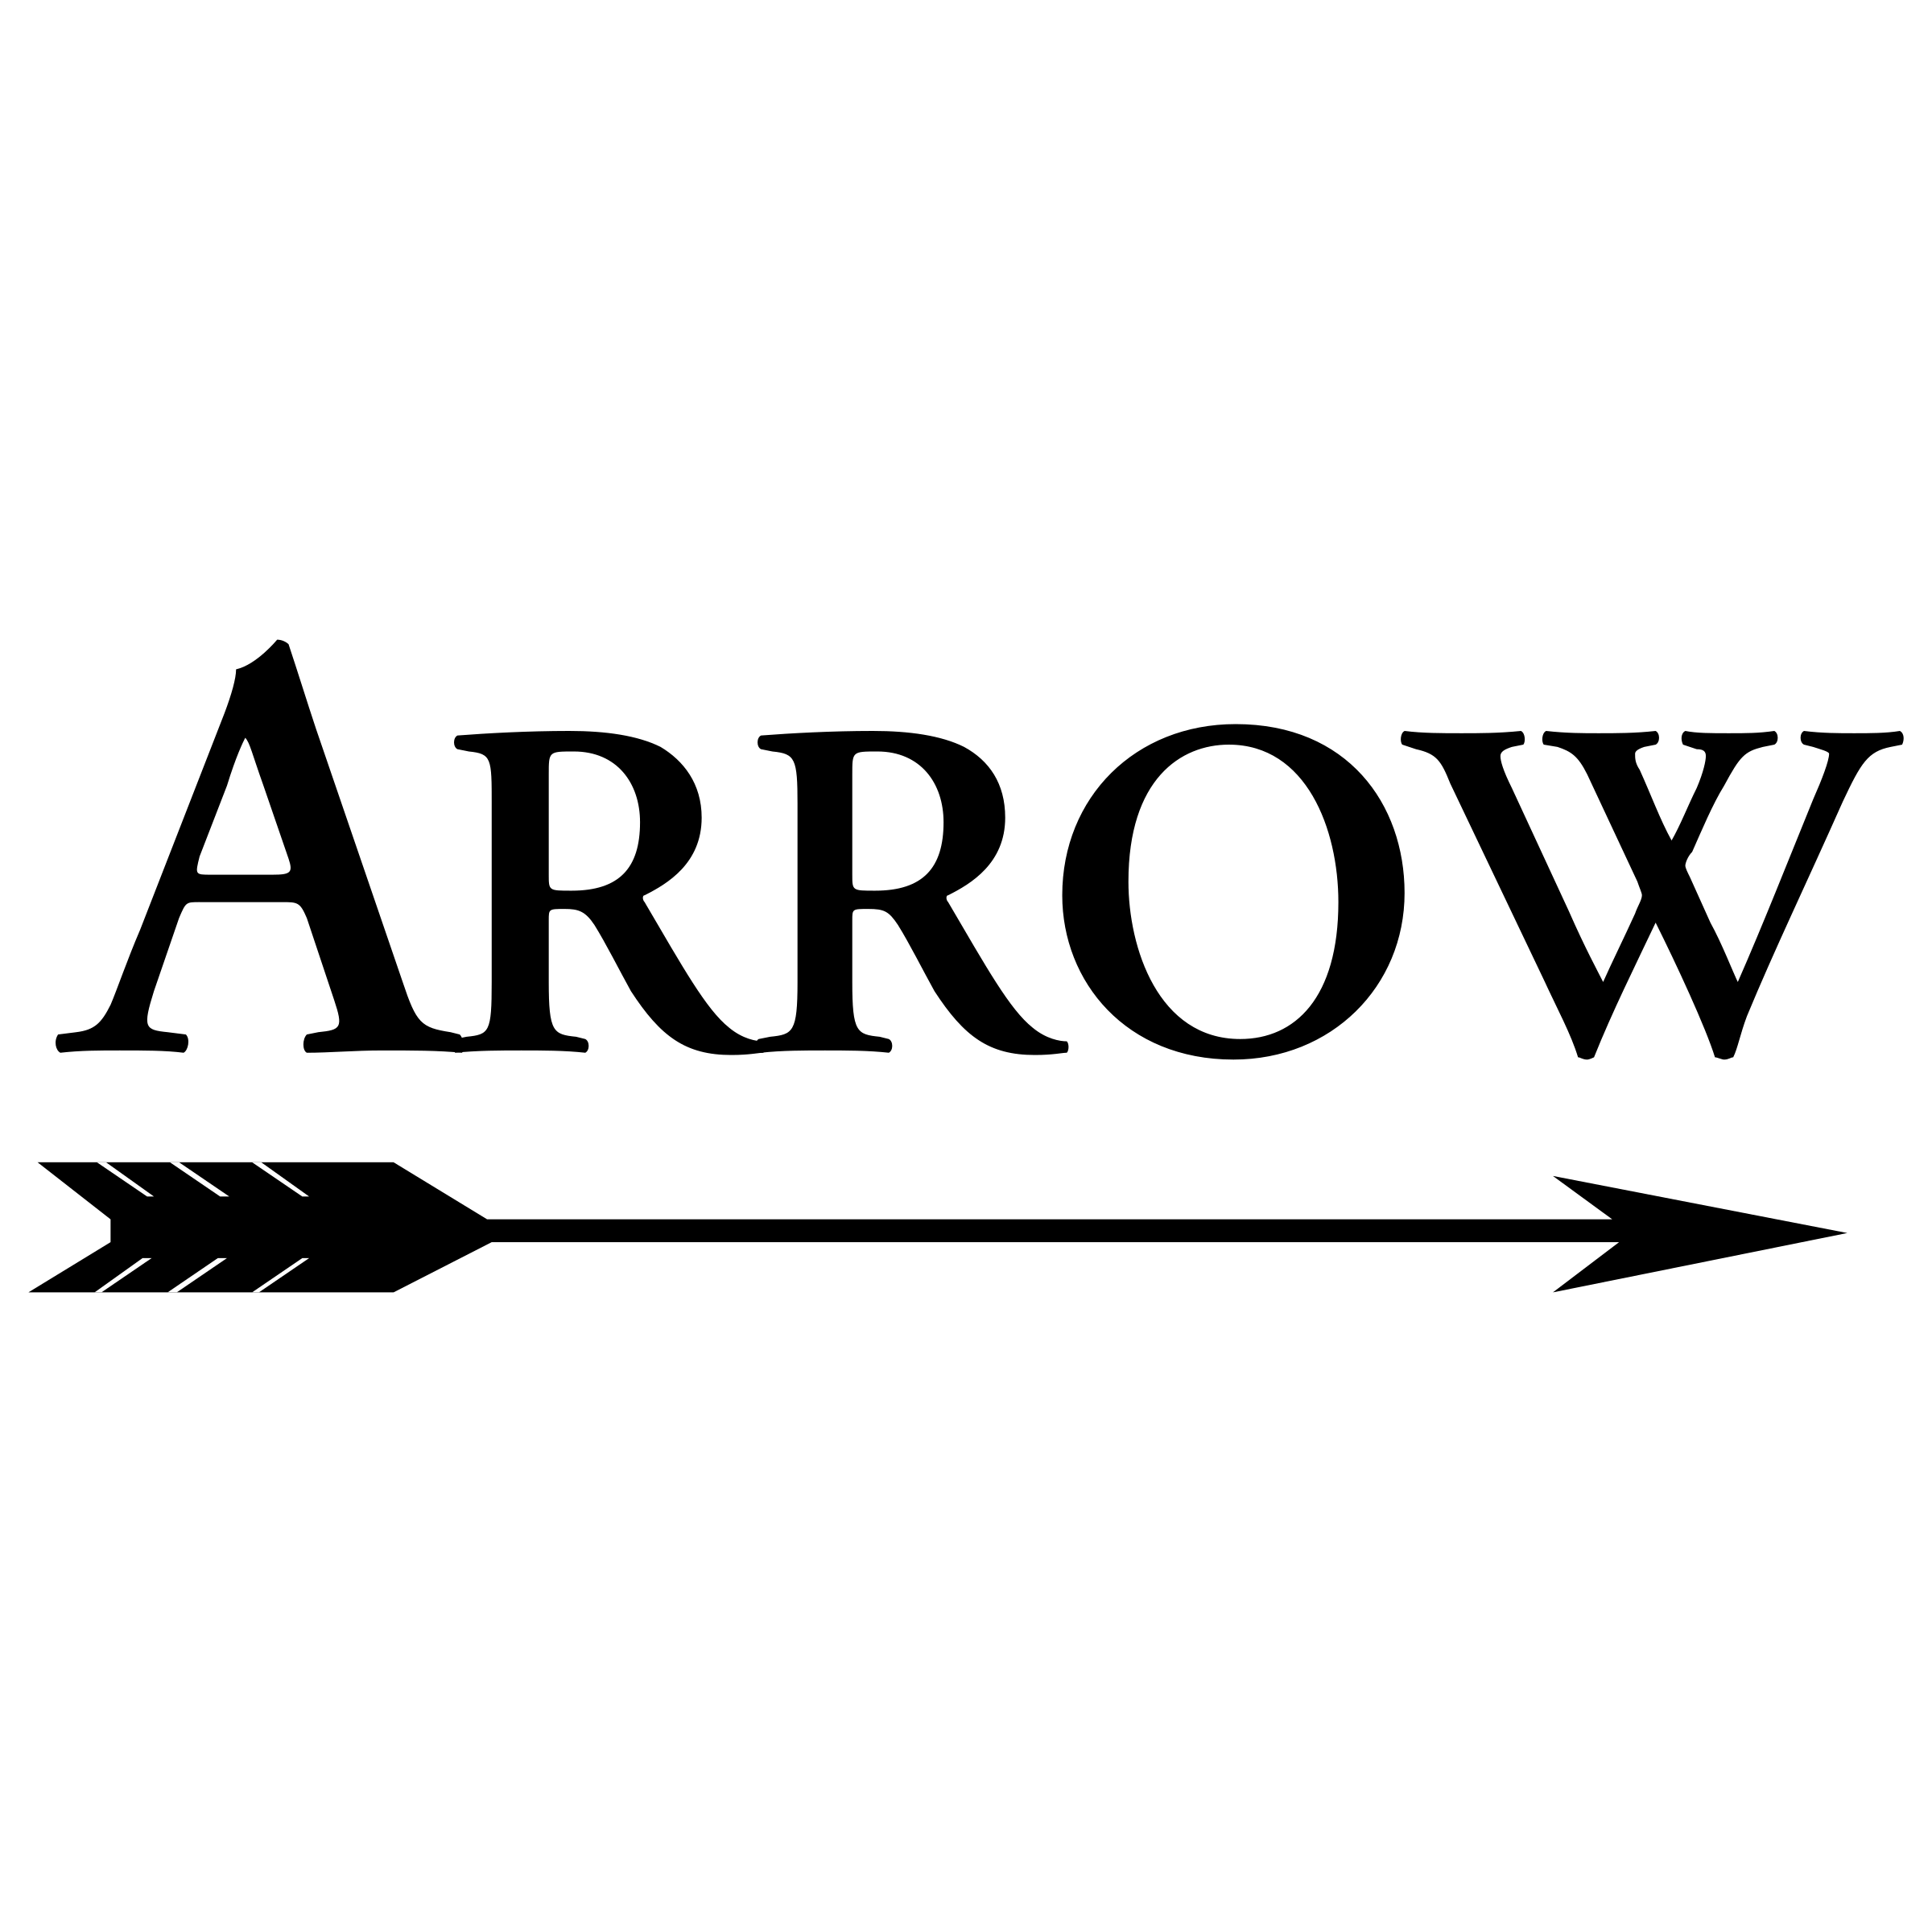 White Arrow Brand Logo - Arrow 02 Logo PNG Transparent & SVG Vector - Freebie Supply